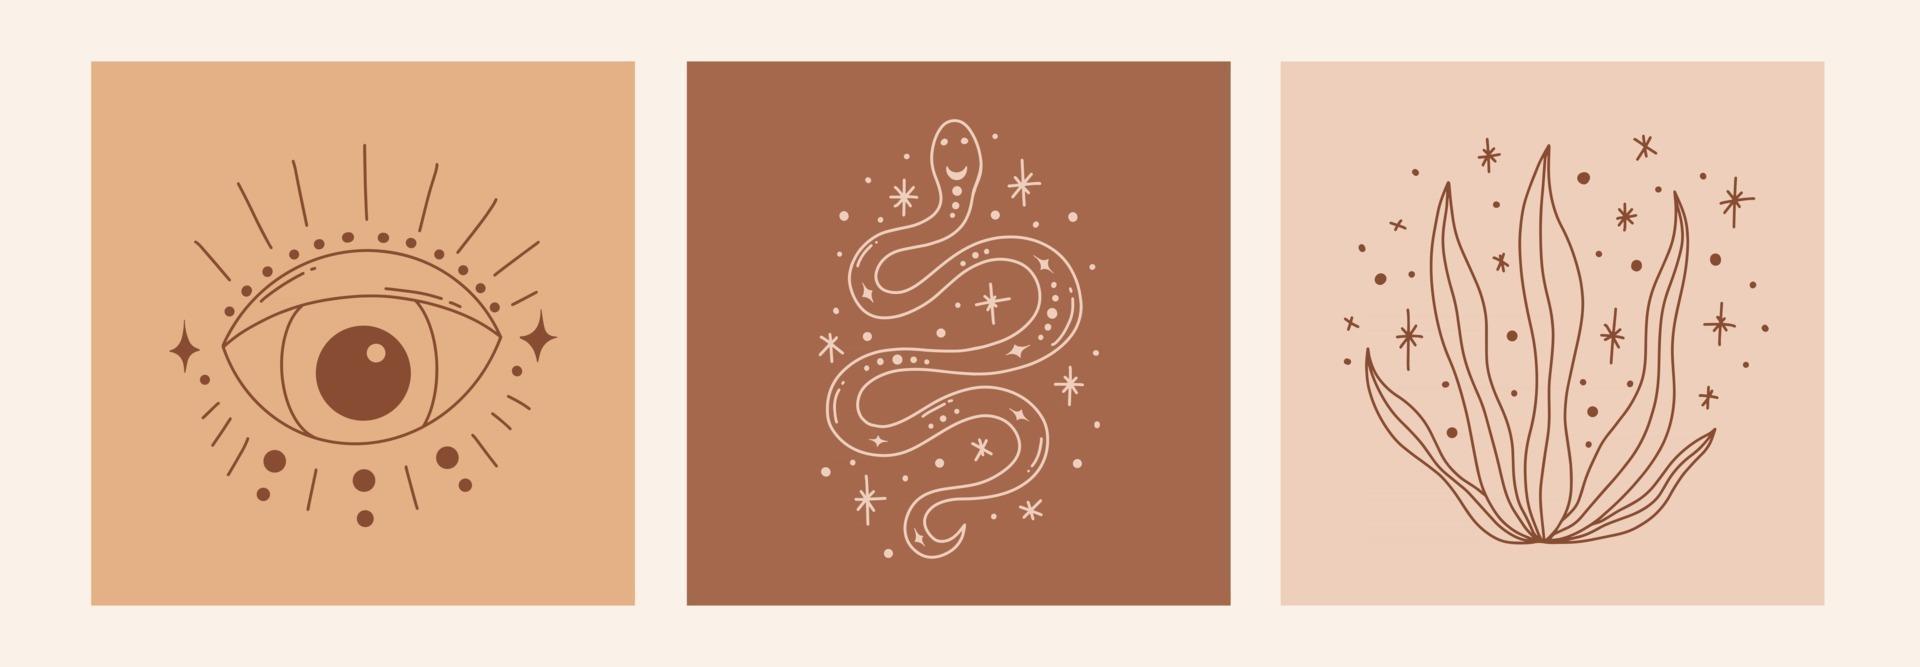 boho místico doodle esotérico conjunto mágico linha arte pôster com olho cobra folhas lua e estrelas ilustração vetorial moderna boêmio vetor